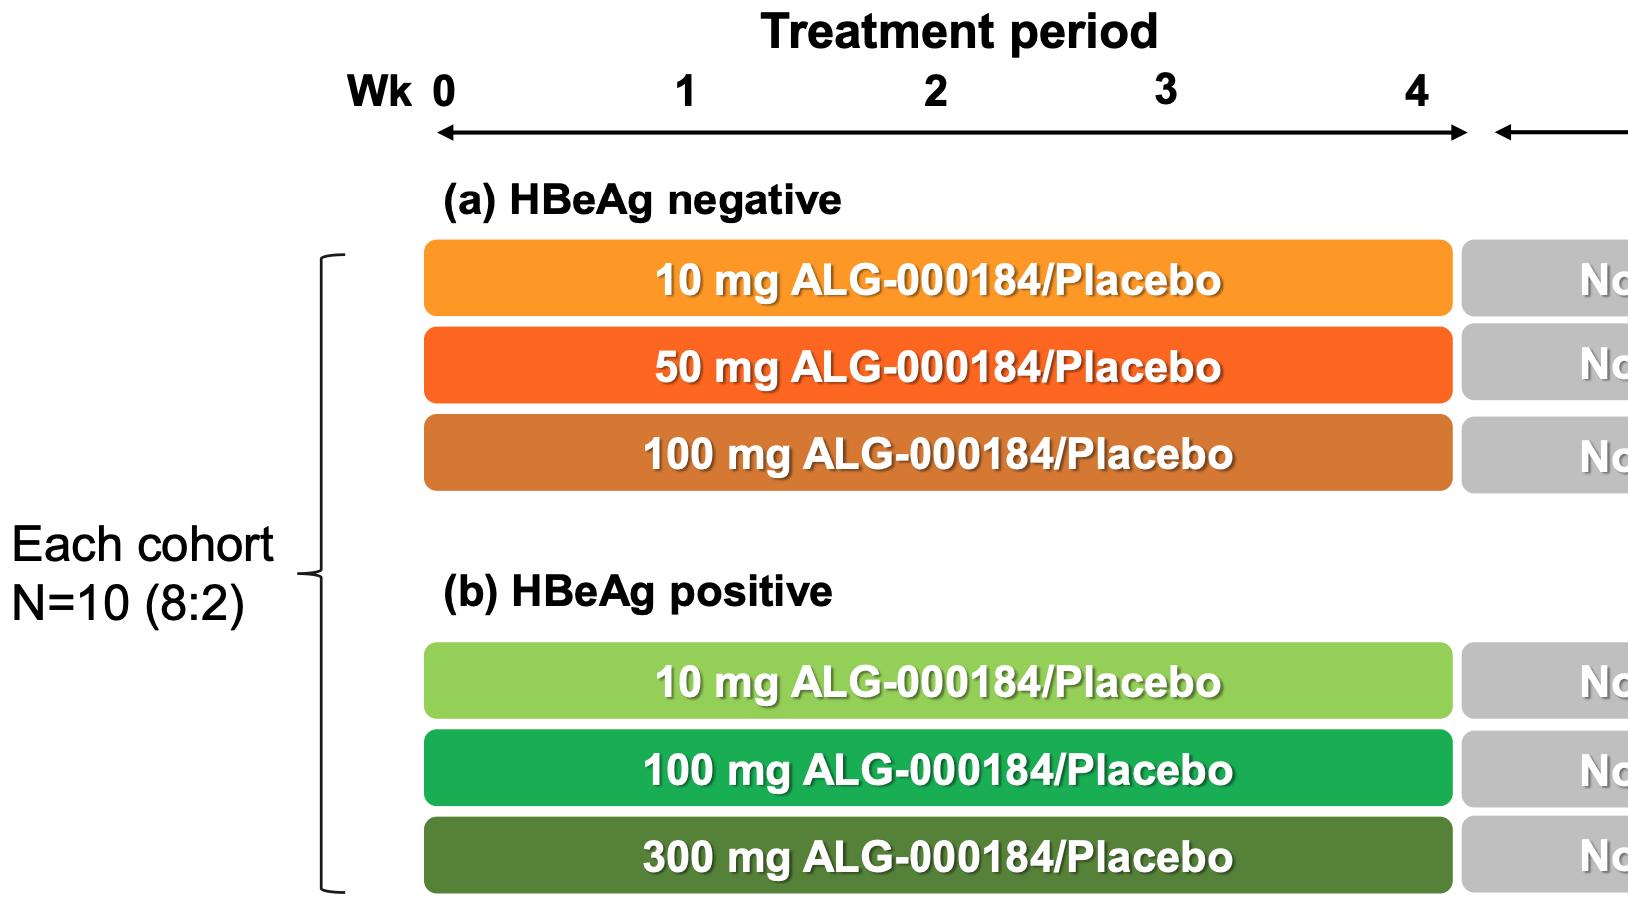 乙肝|乙肝在研新药ALG-000184，无论HBeAg状态，迅速降低HBVDNA及HBsAg